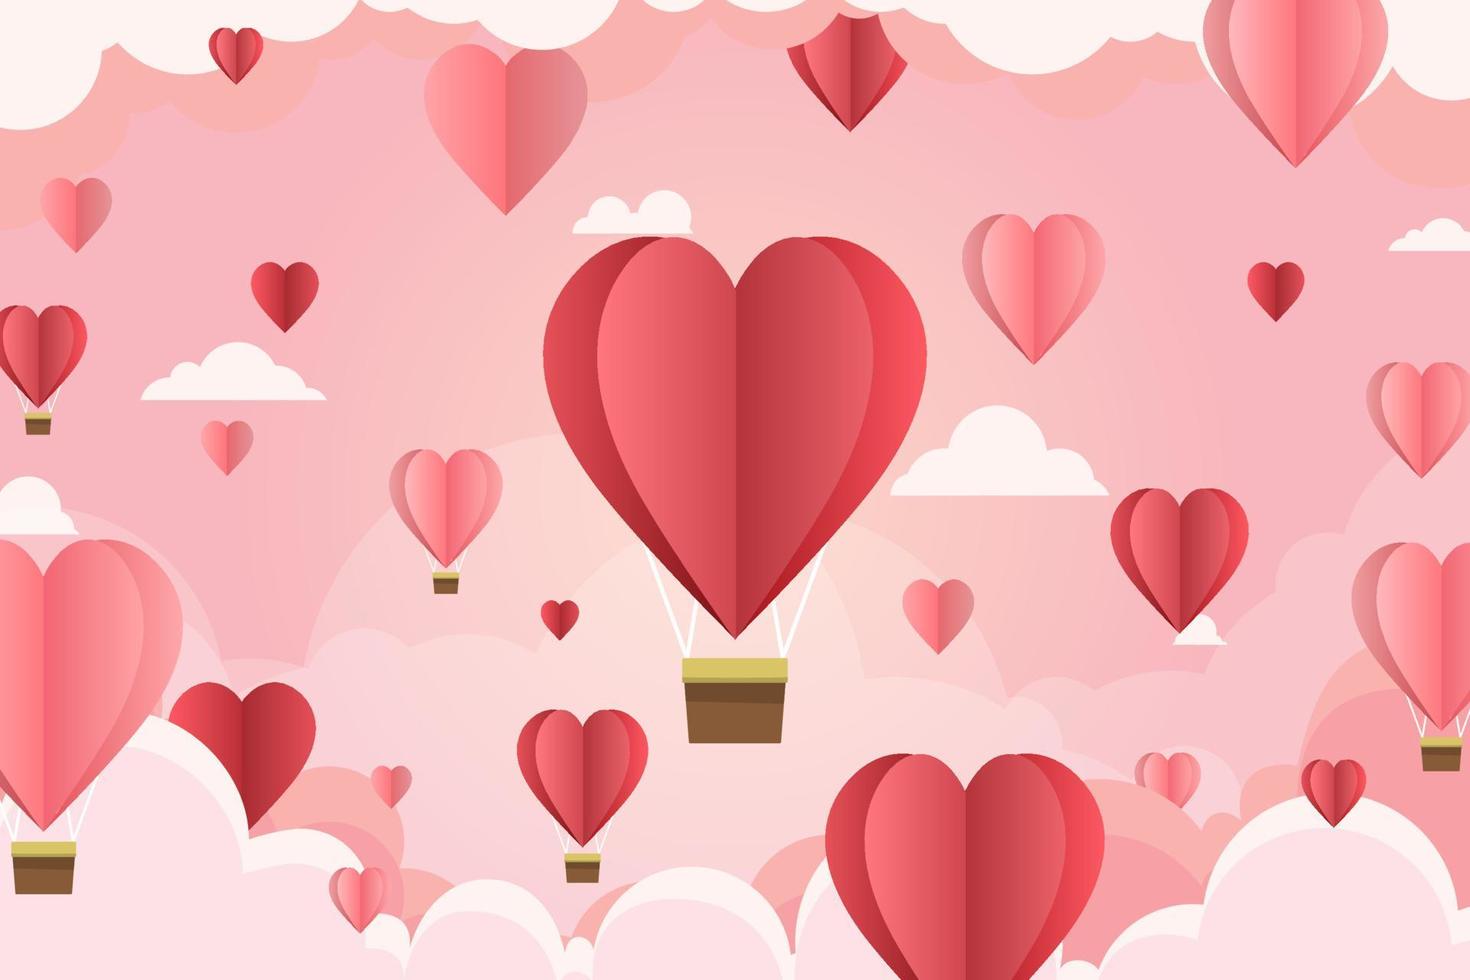 fondo del día de san valentín con globo en forma de corazón y nube en fondo rosa para fondos de pantalla, volantes, invitaciones, carteles, volantes, pancartas. ilustraciones vectoriales eps10 vector